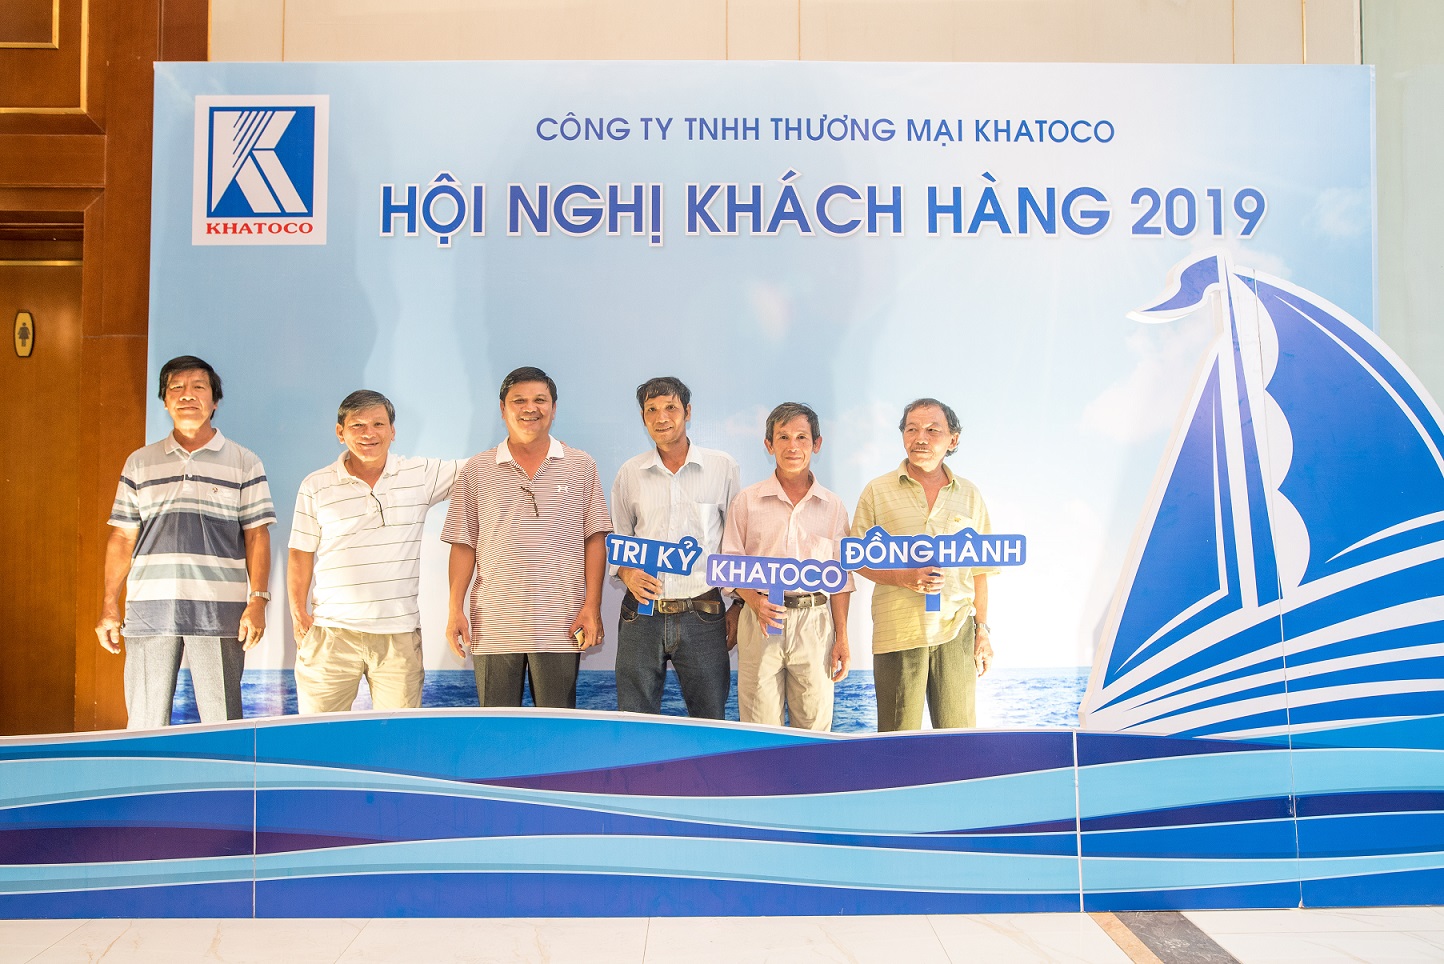 Công ty Thương mại Khatoco tổ chức thành công Hội nghị khách hàng – Khu vực Miền Trung Tây Nguyên năm 2019